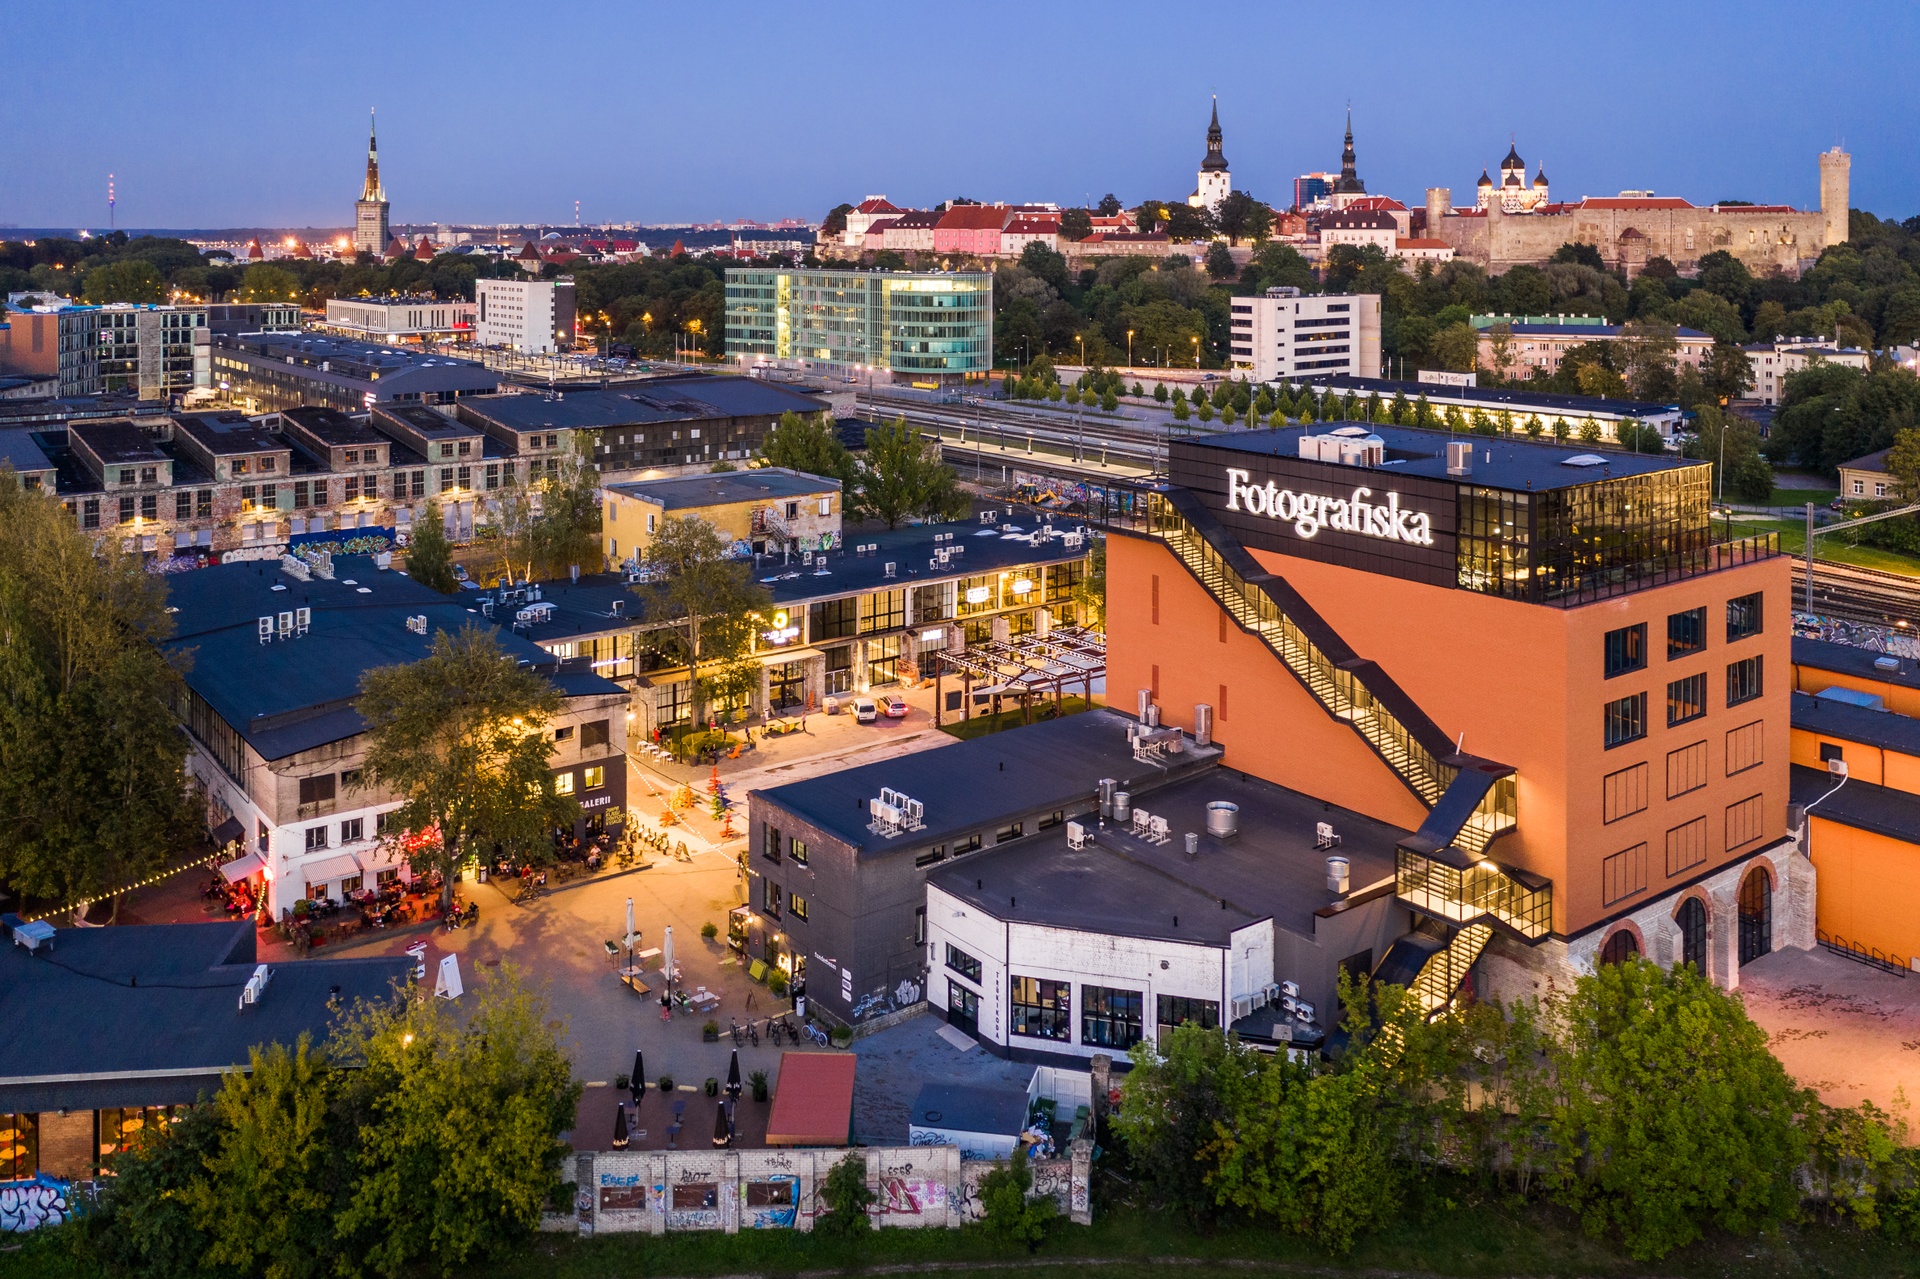 City view of Telliskivi